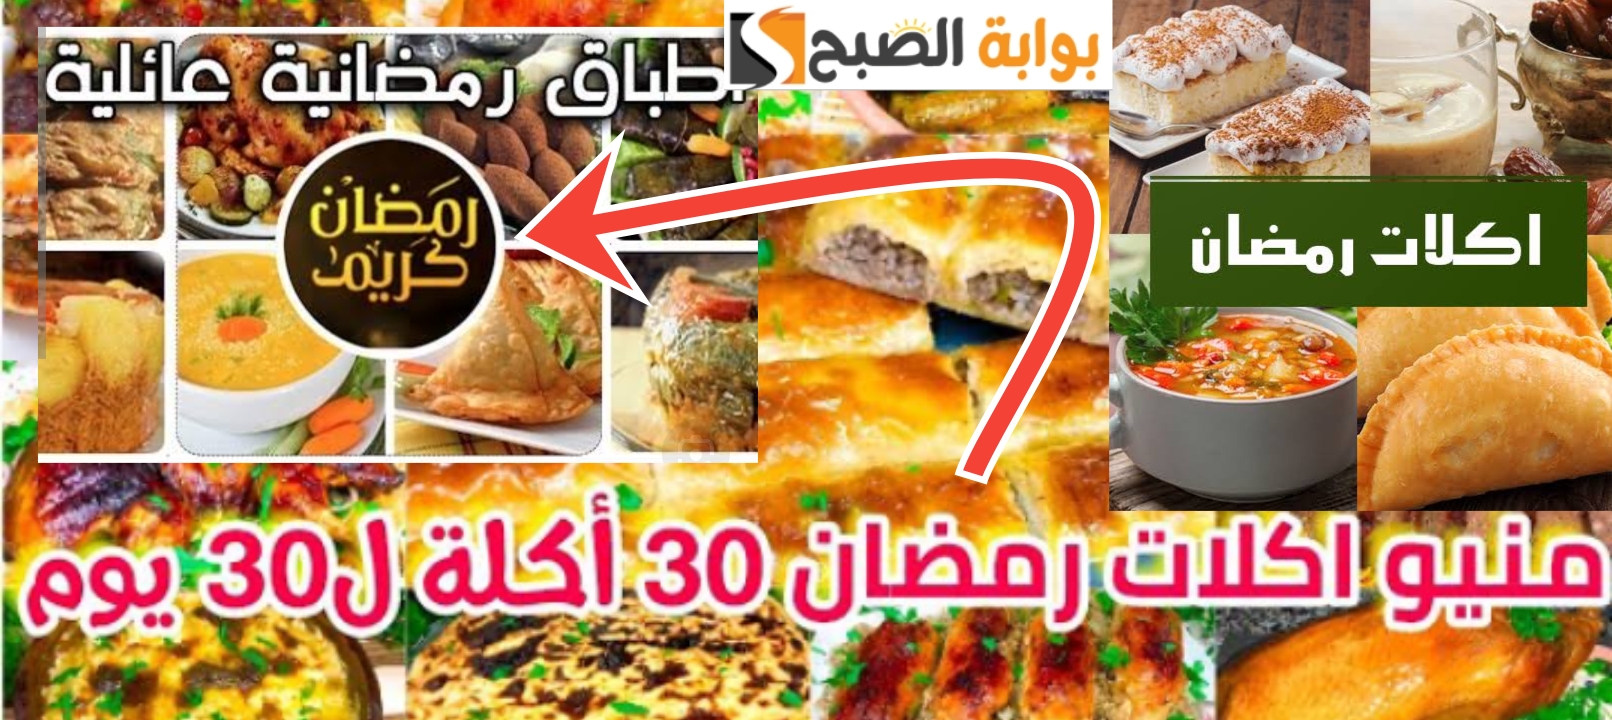 جدول أكل رمضان 30 يوم أفكار جديدة ومميزة للفطار والسحور